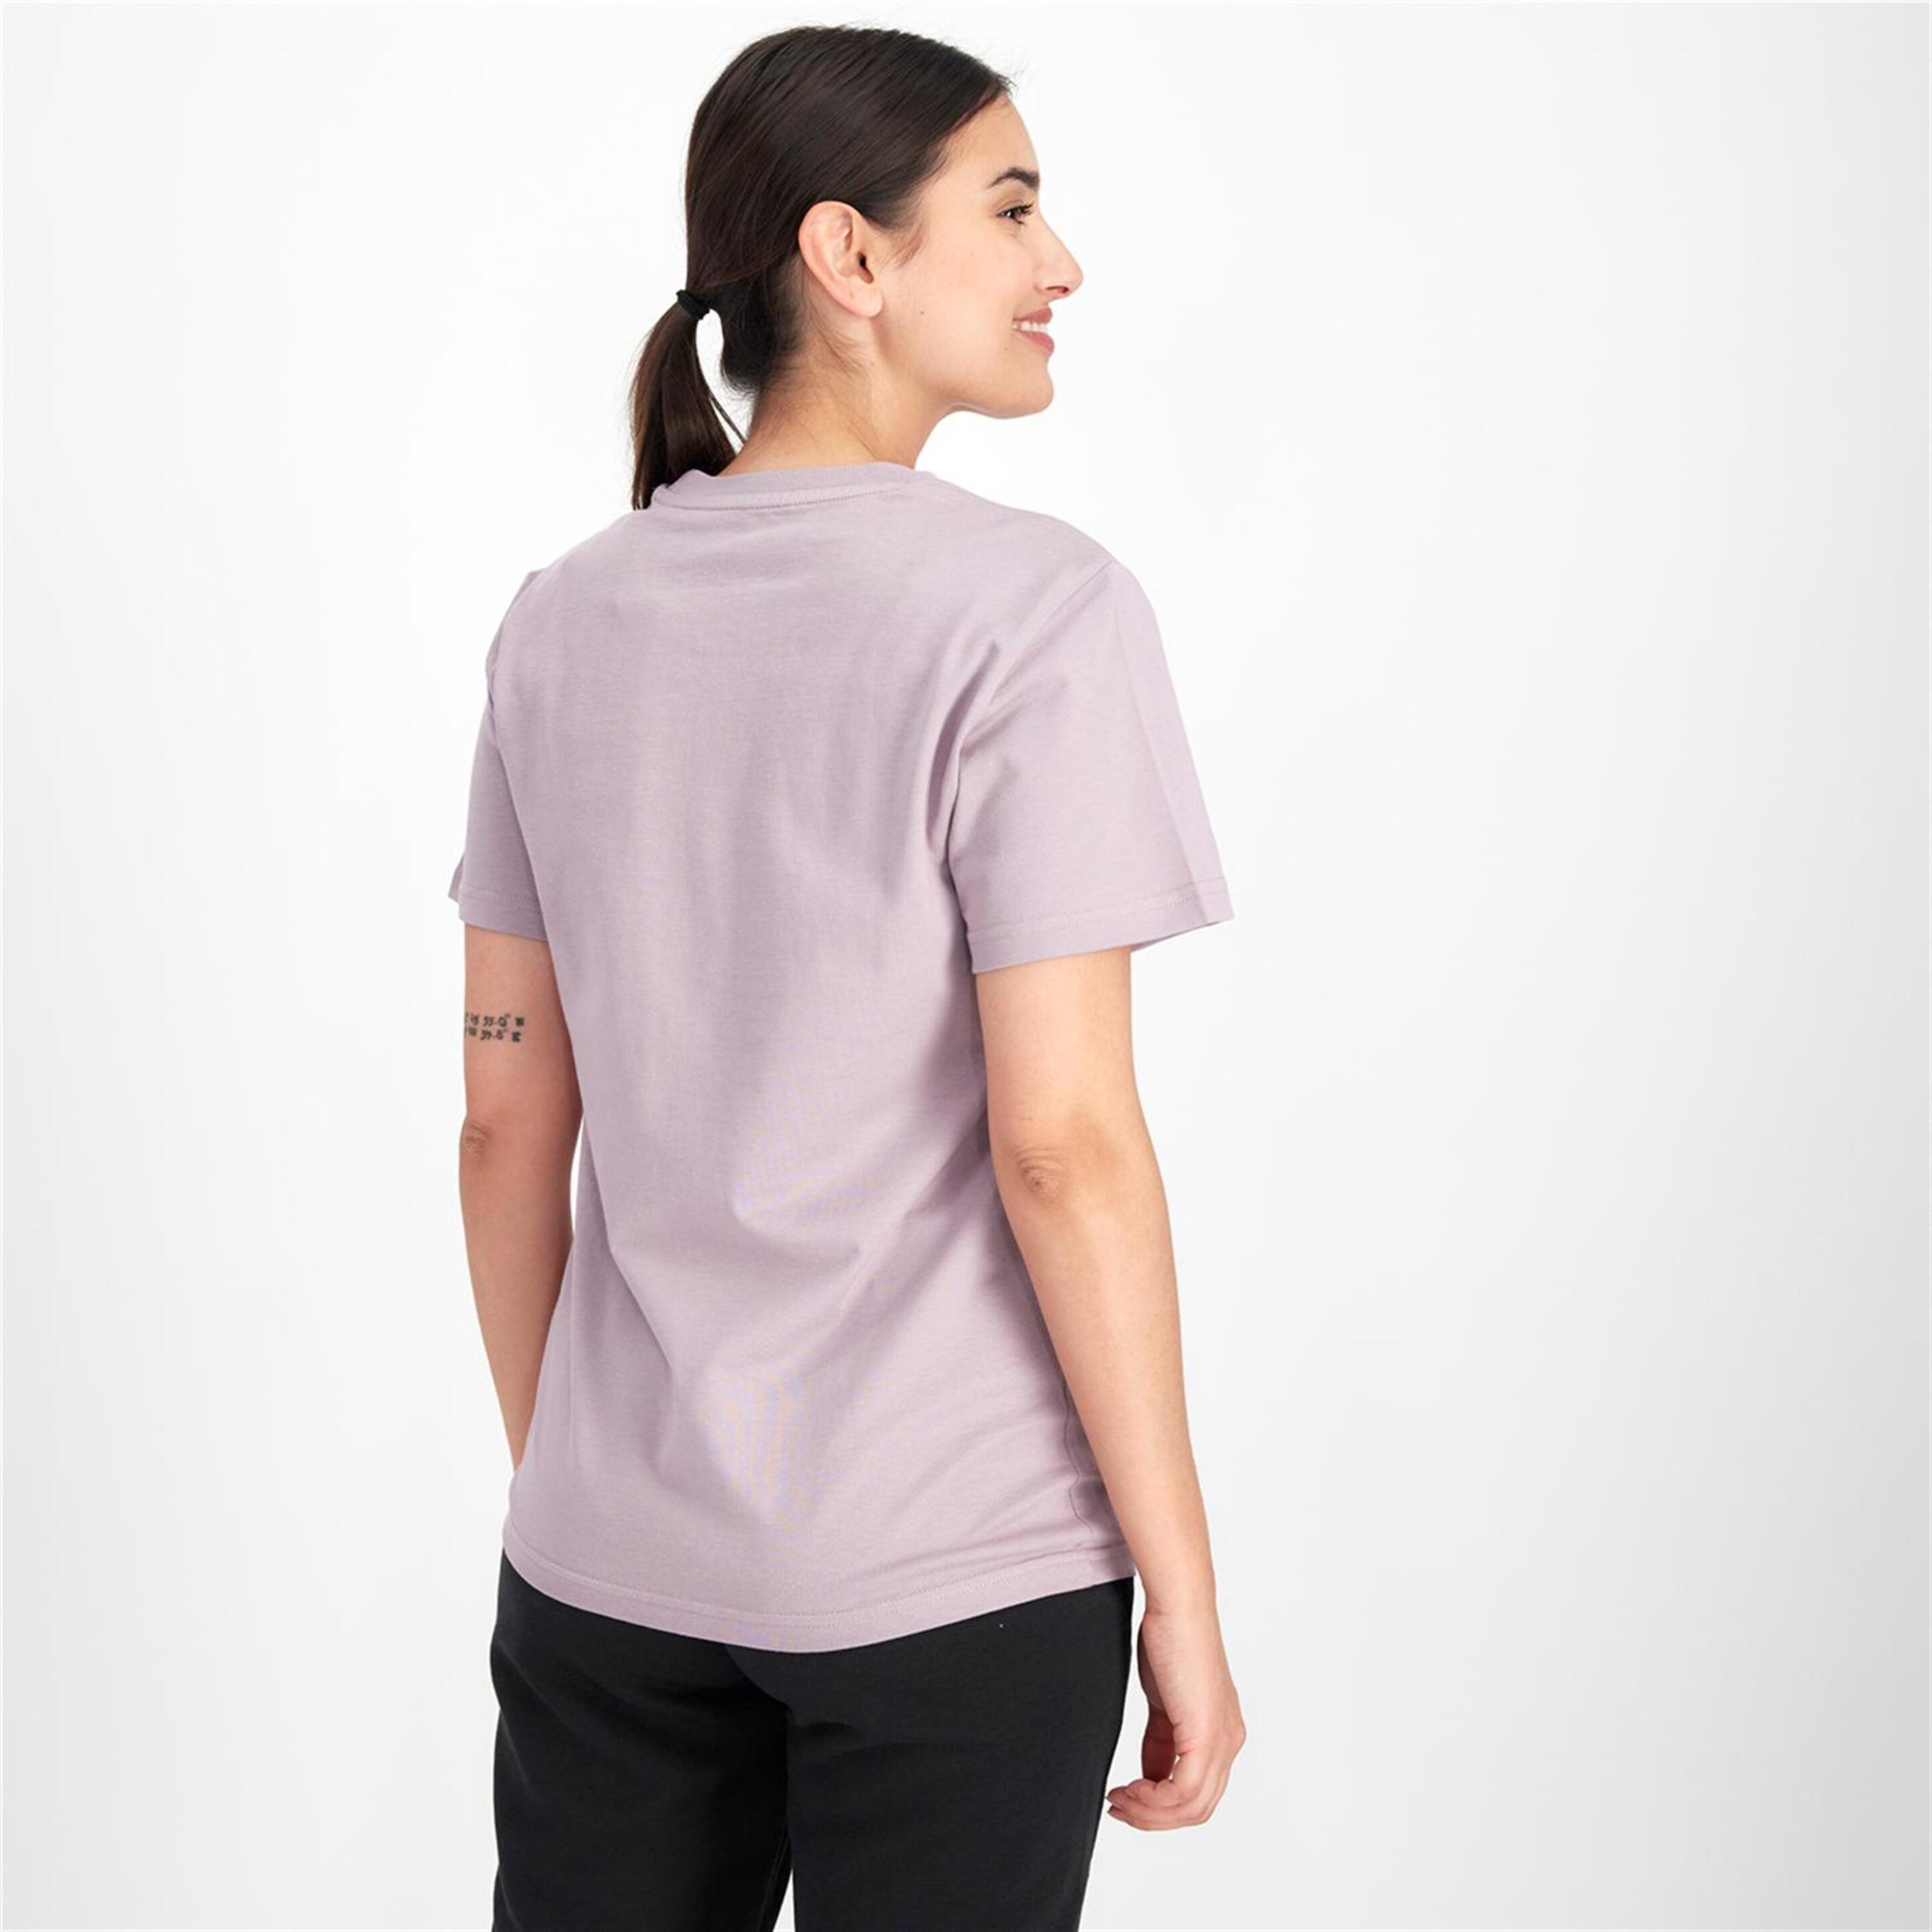 adidas 3 Stripes Mauve - Morado - Camiseta Mujer  | Sprinter